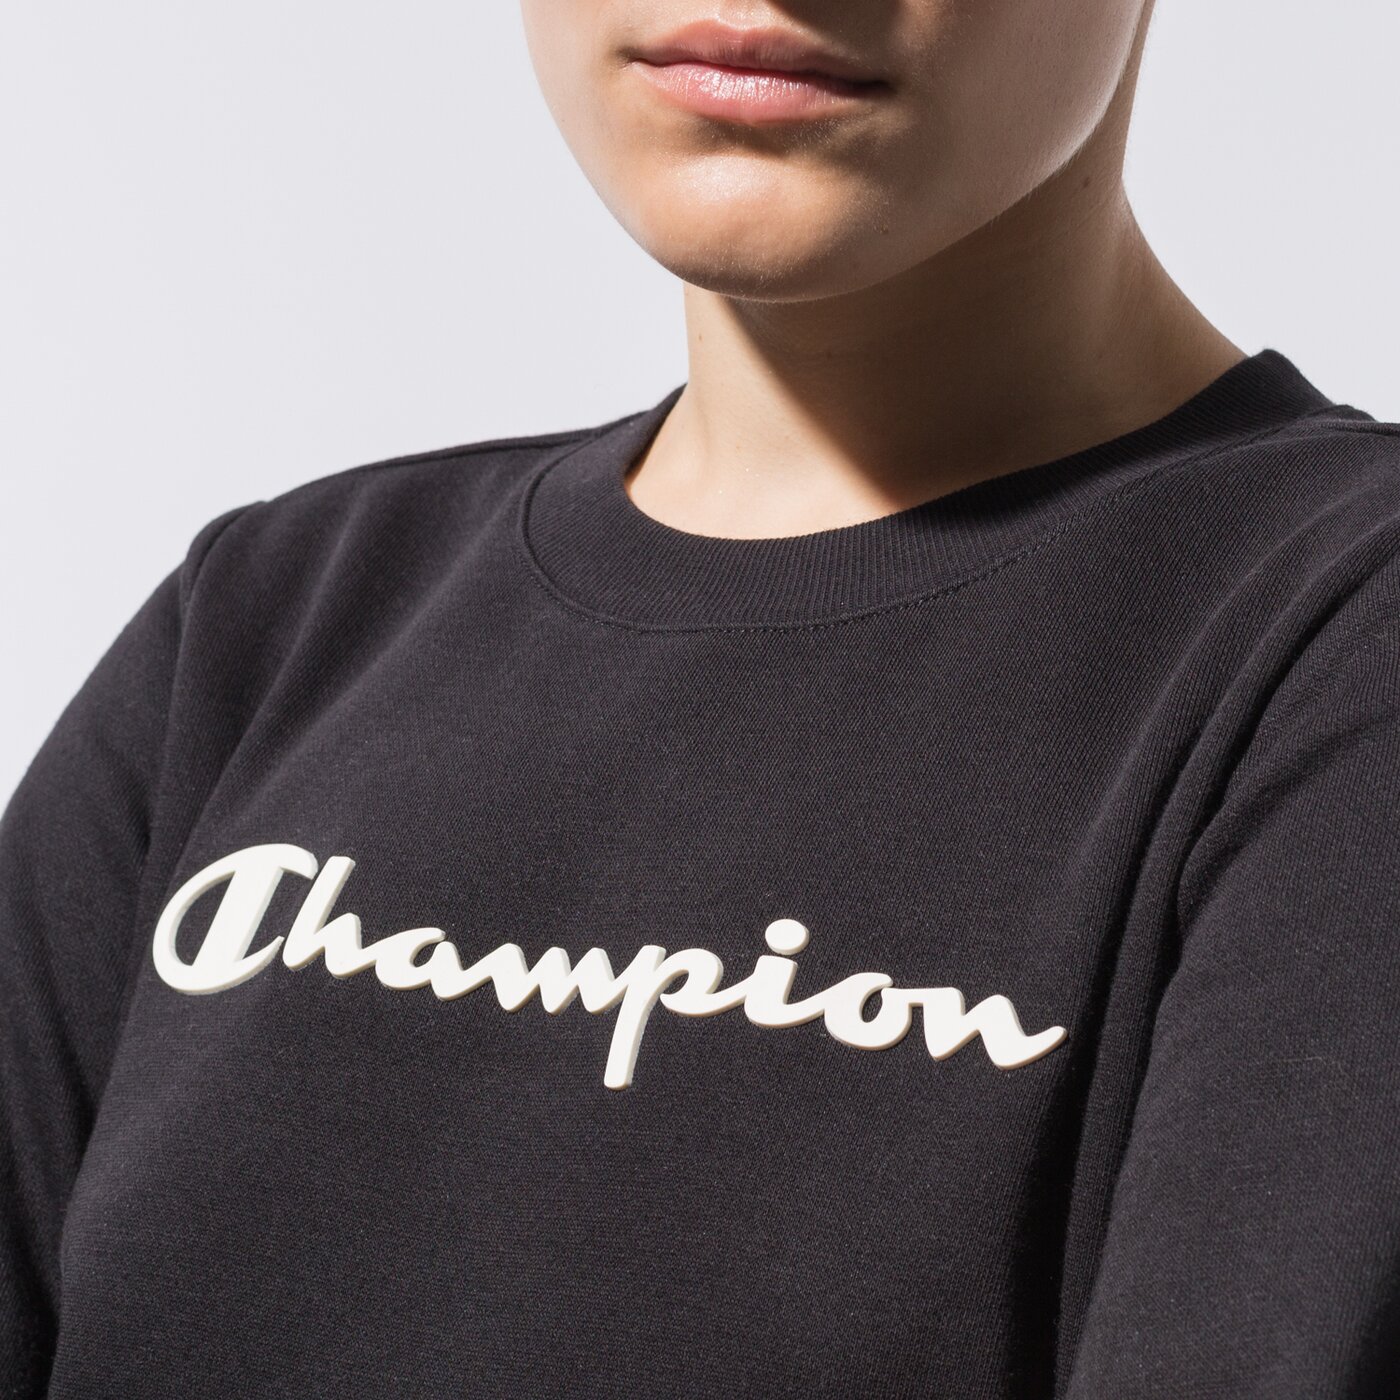 Sieviešu džemperis CHAMPION DŽEMPERIS CREWNECK SWEATSHIRT 113210kk001 krāsa melna